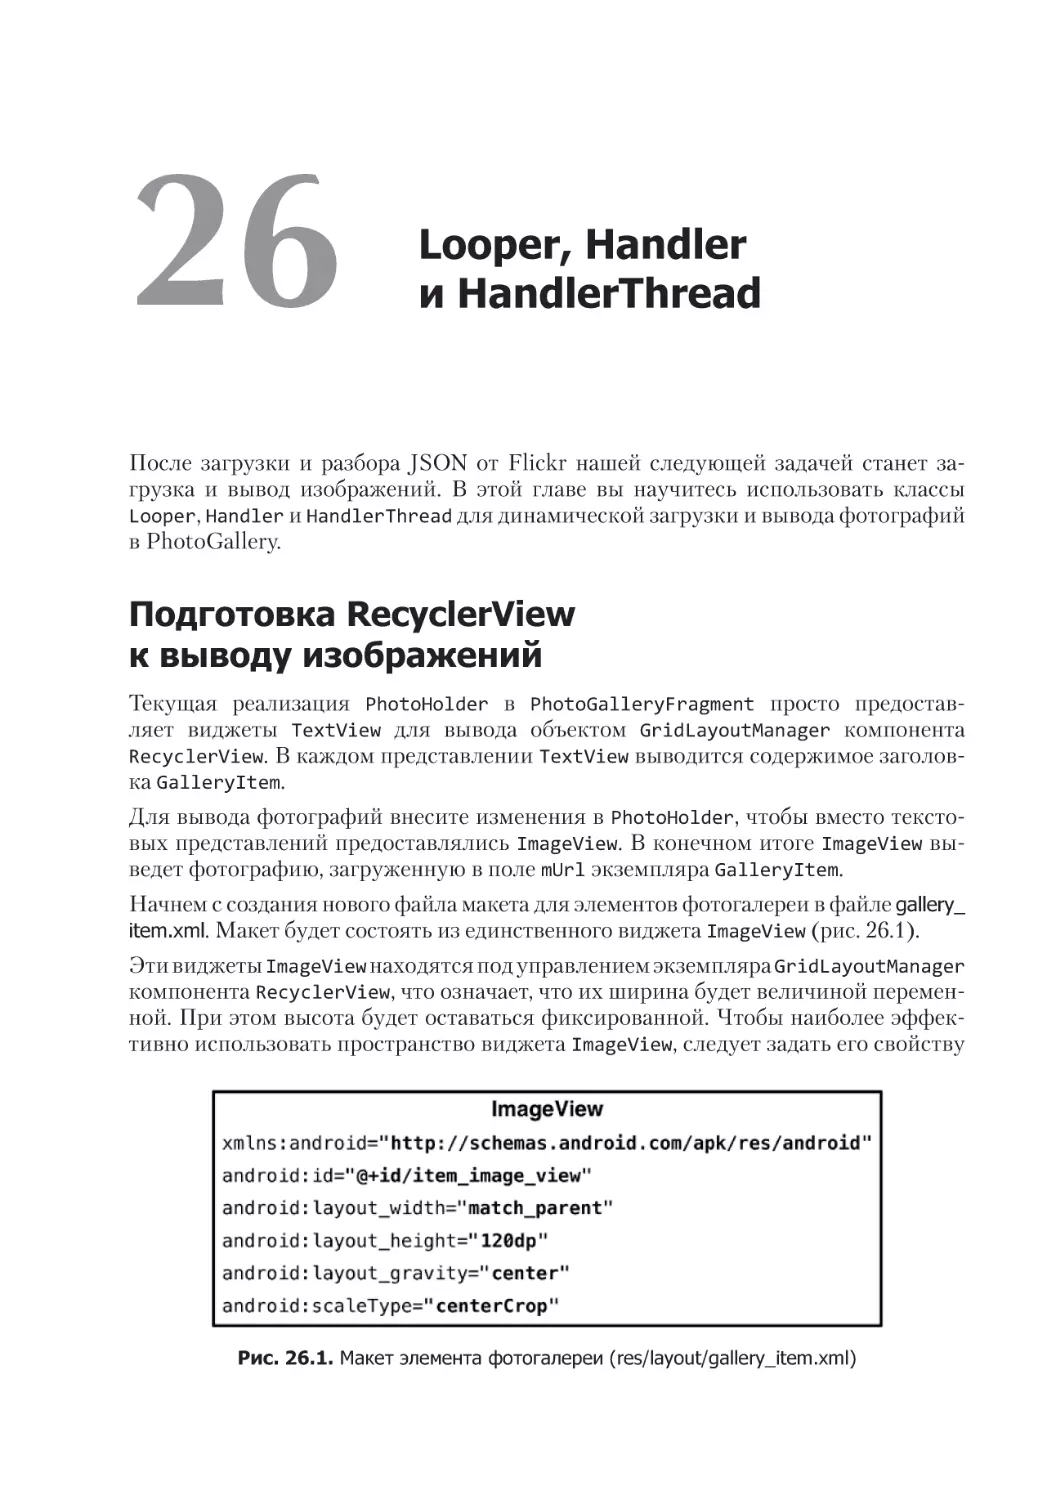 Глава 26. Looper, Handler и HandlerThread
Подготовка RecyclerView к выводу изображений